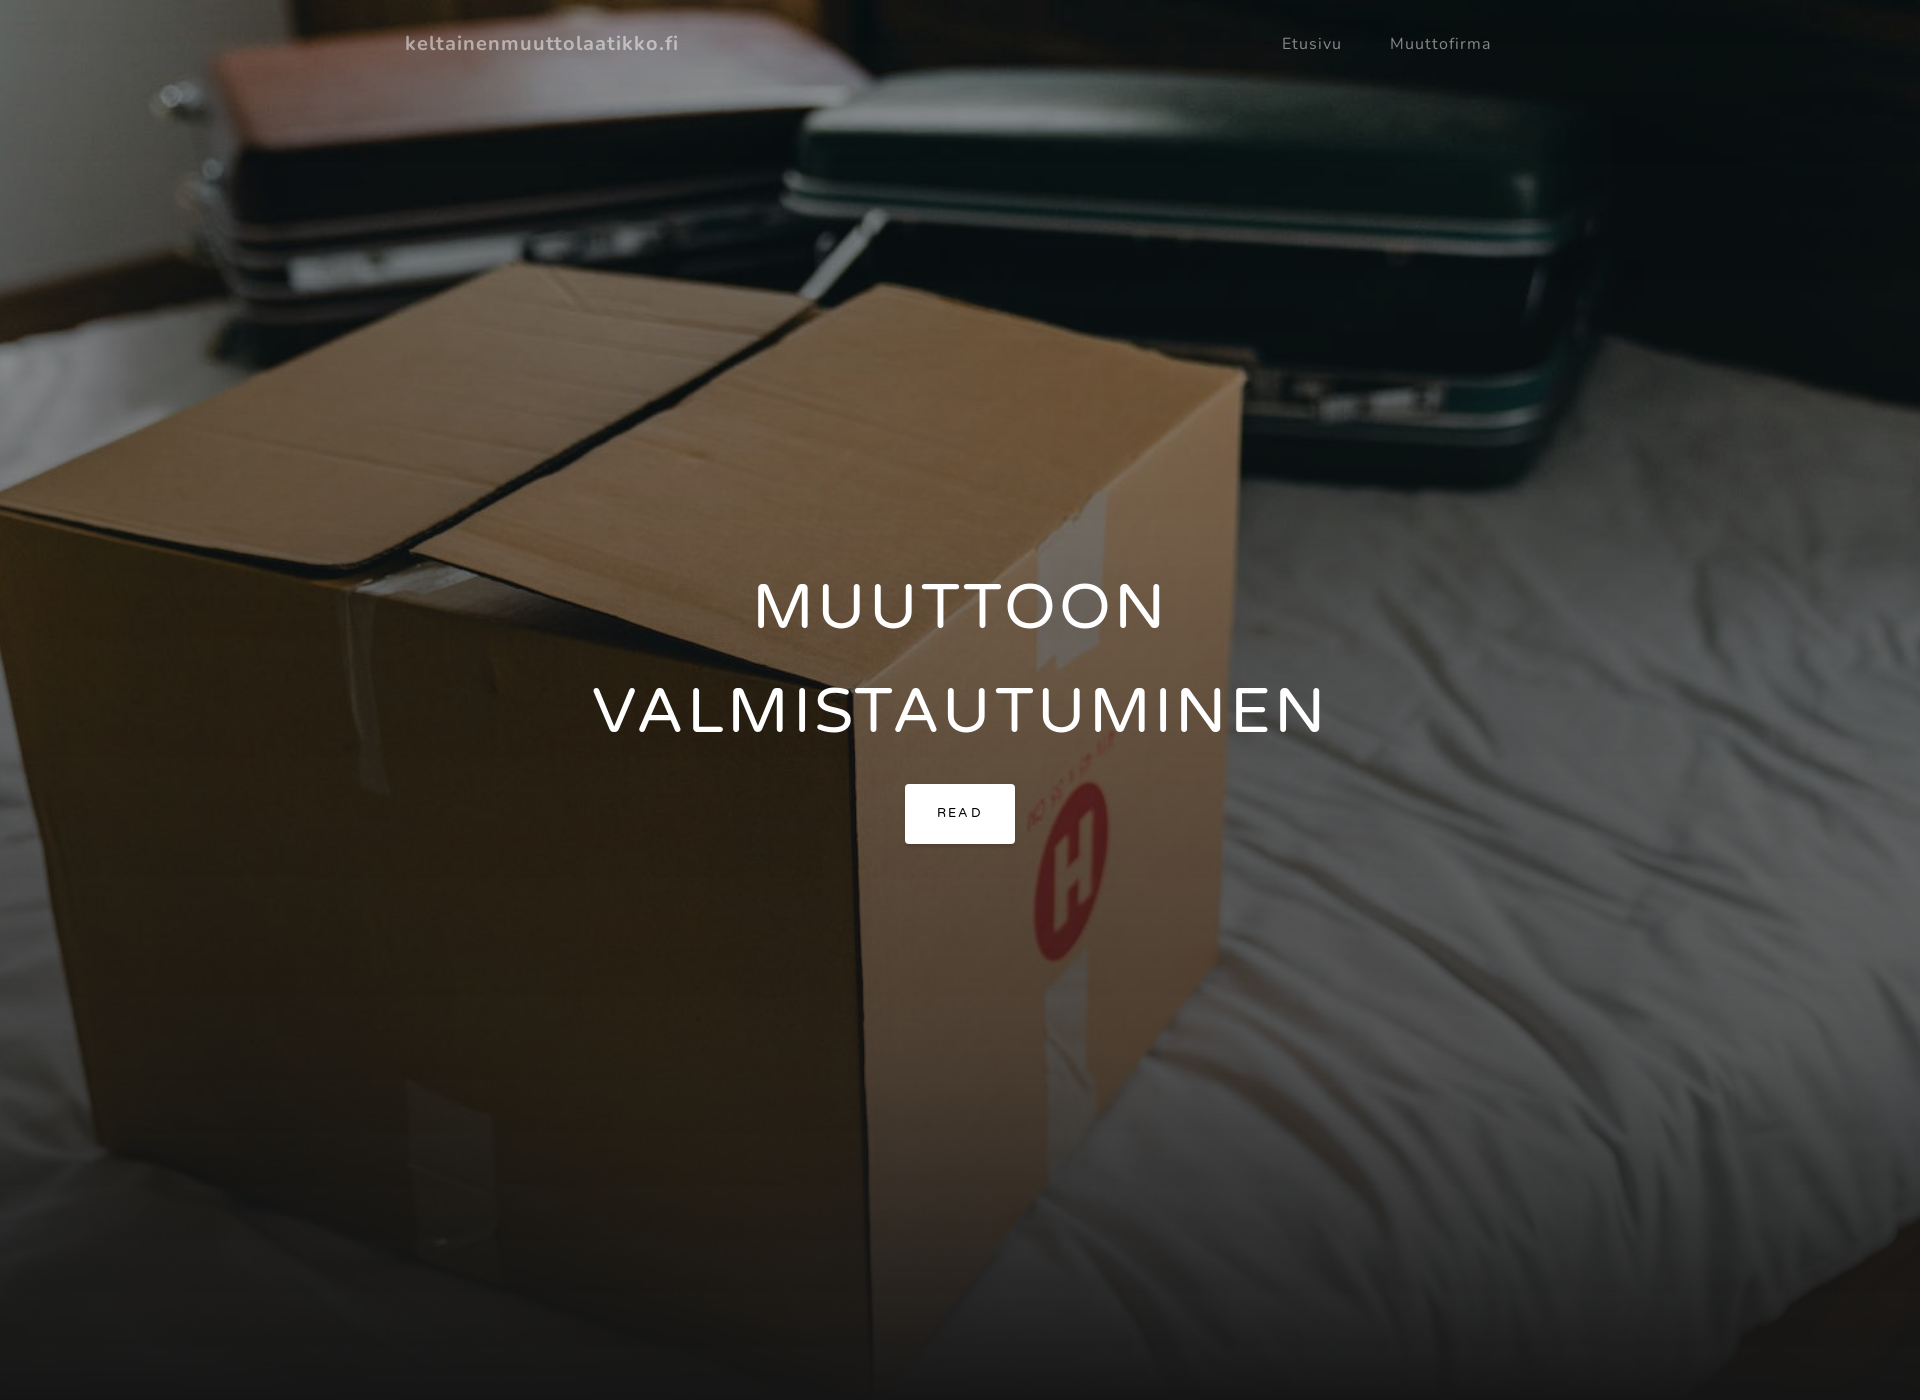 Näyttökuva keltainenmuuttolaatikko.fi